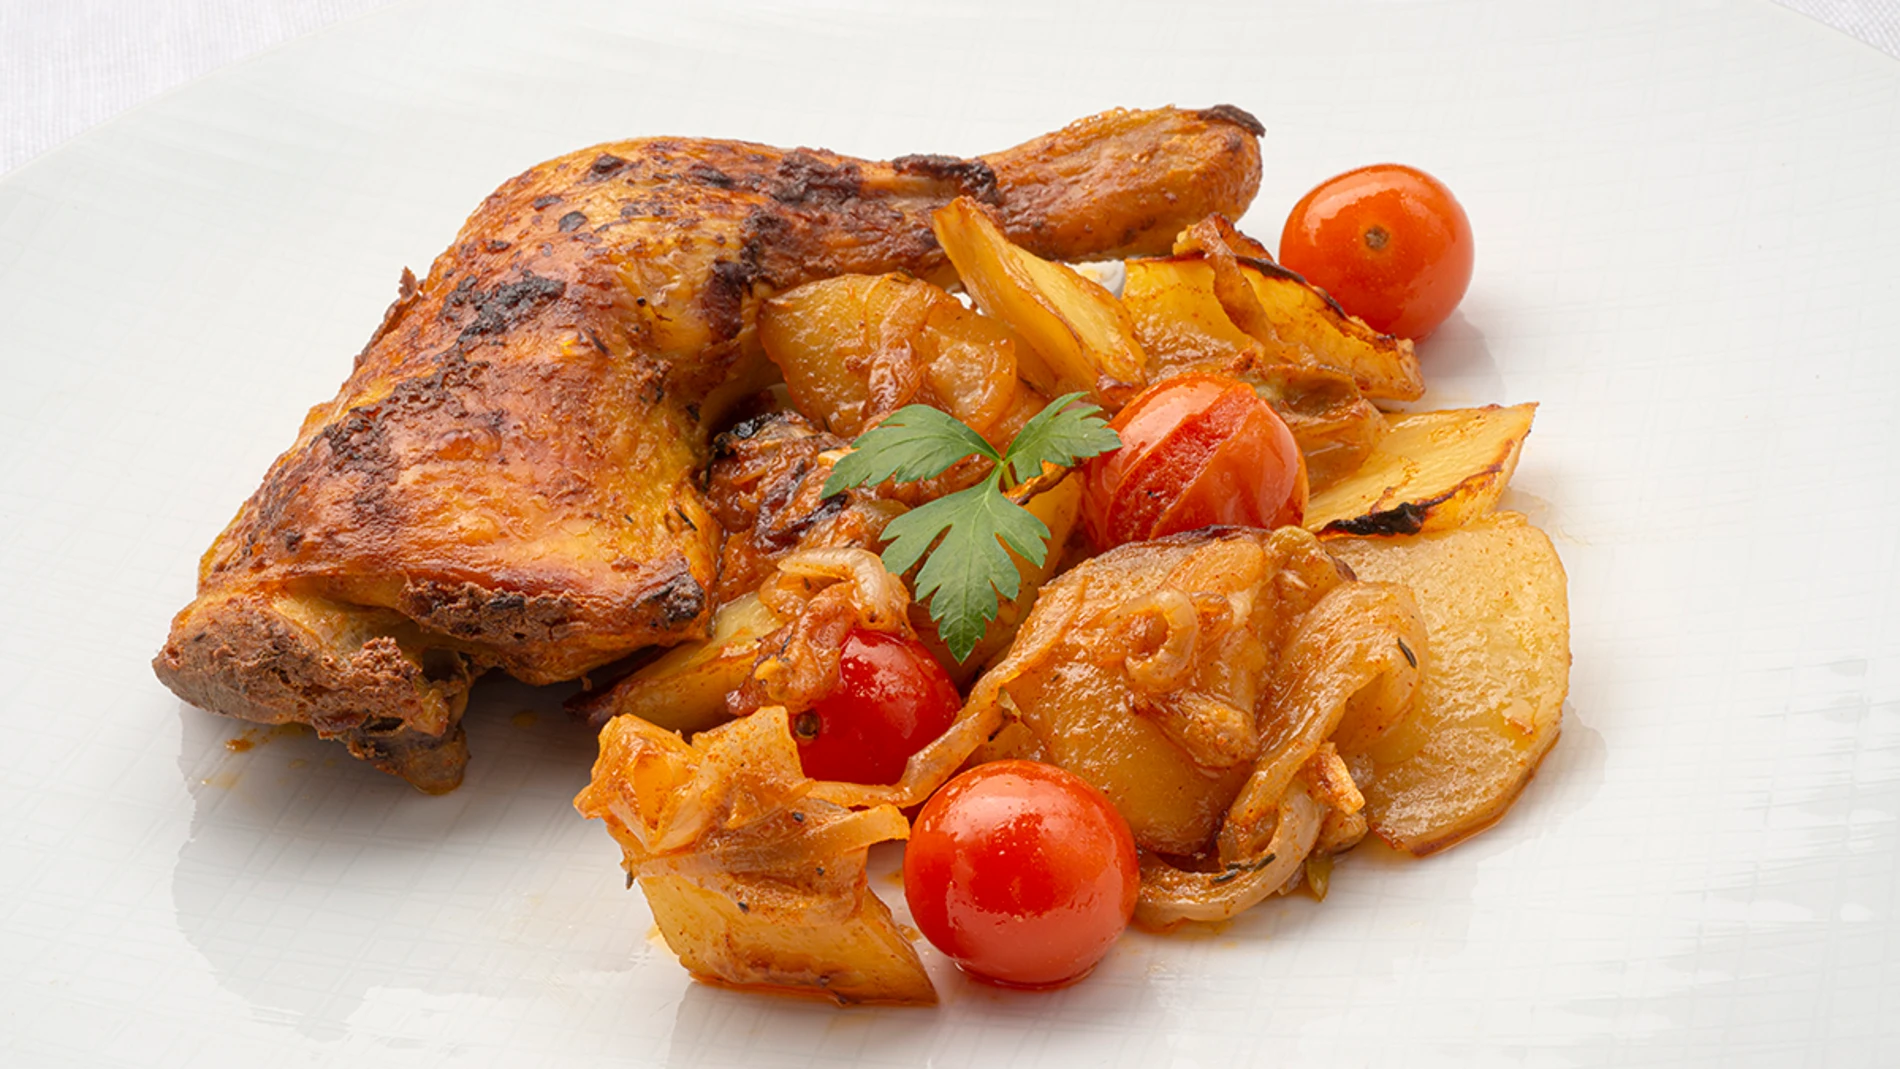 Receta sencilla de pollo al estilo turco con patatas y cebolla, de Karlos  Arguiñano